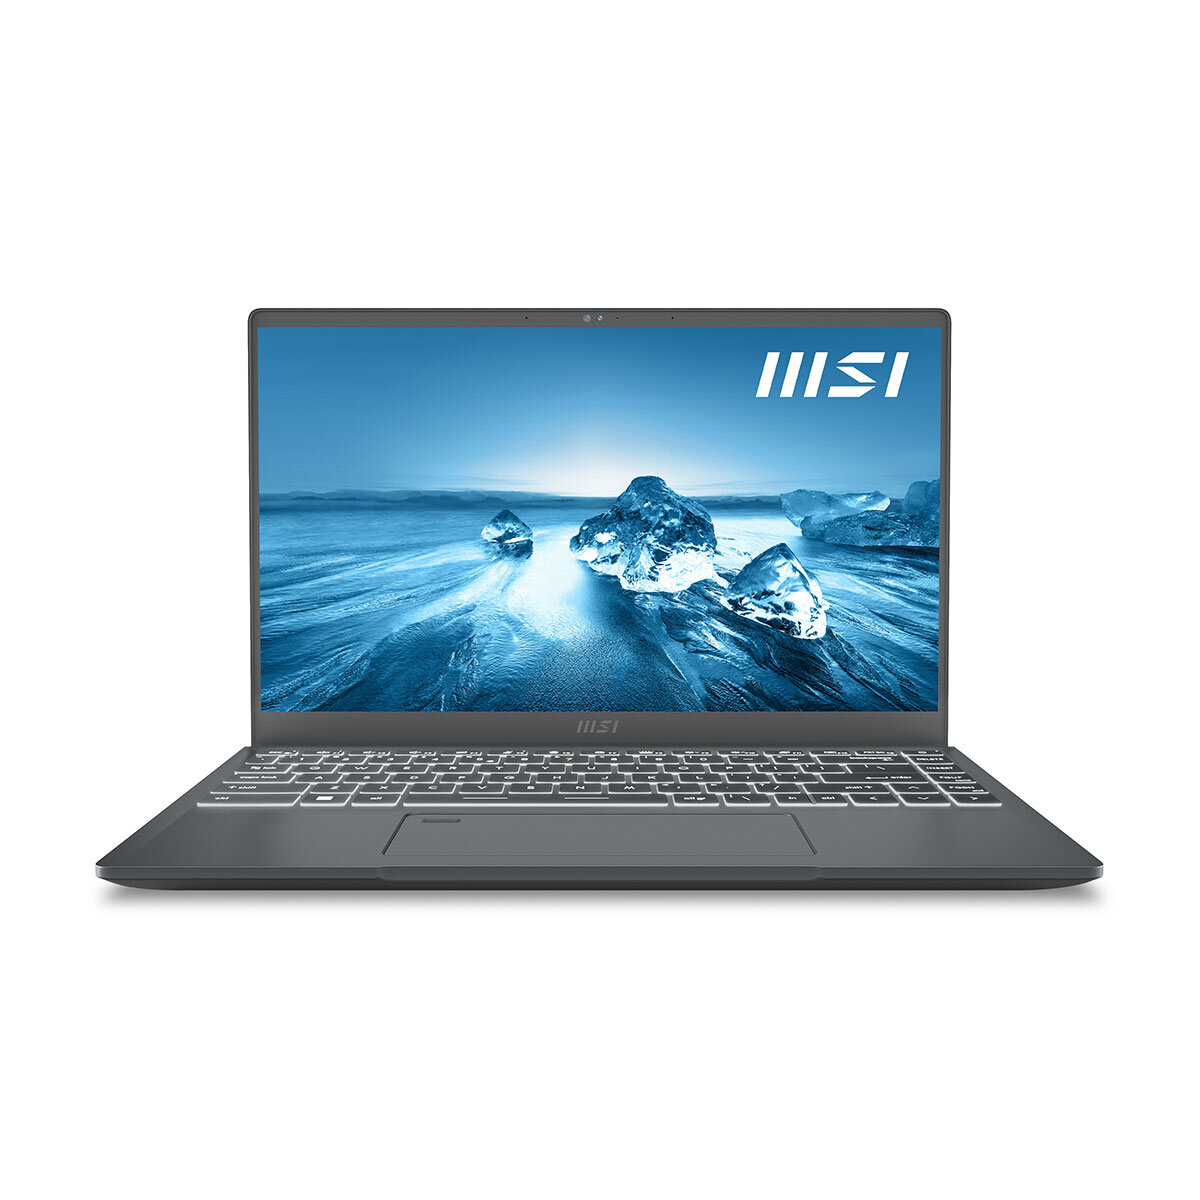 Buy MSI Prestige E14, Intel Core i7, 16GB, 512GB SSD, 14 Inch Laptop, 9S7-14C612-043 at Costco.co.uk